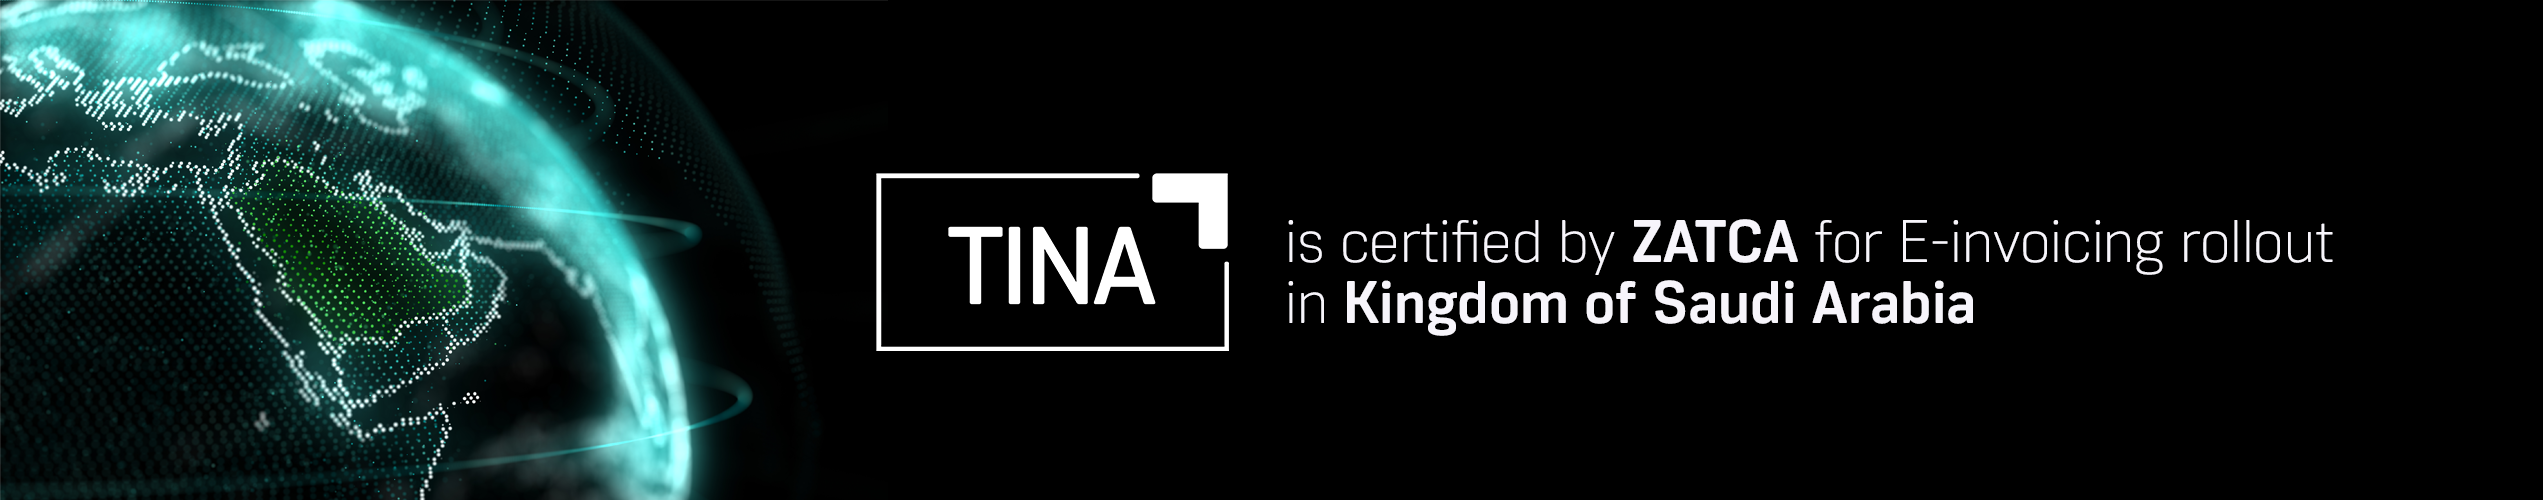 TINA certified by ZATCA